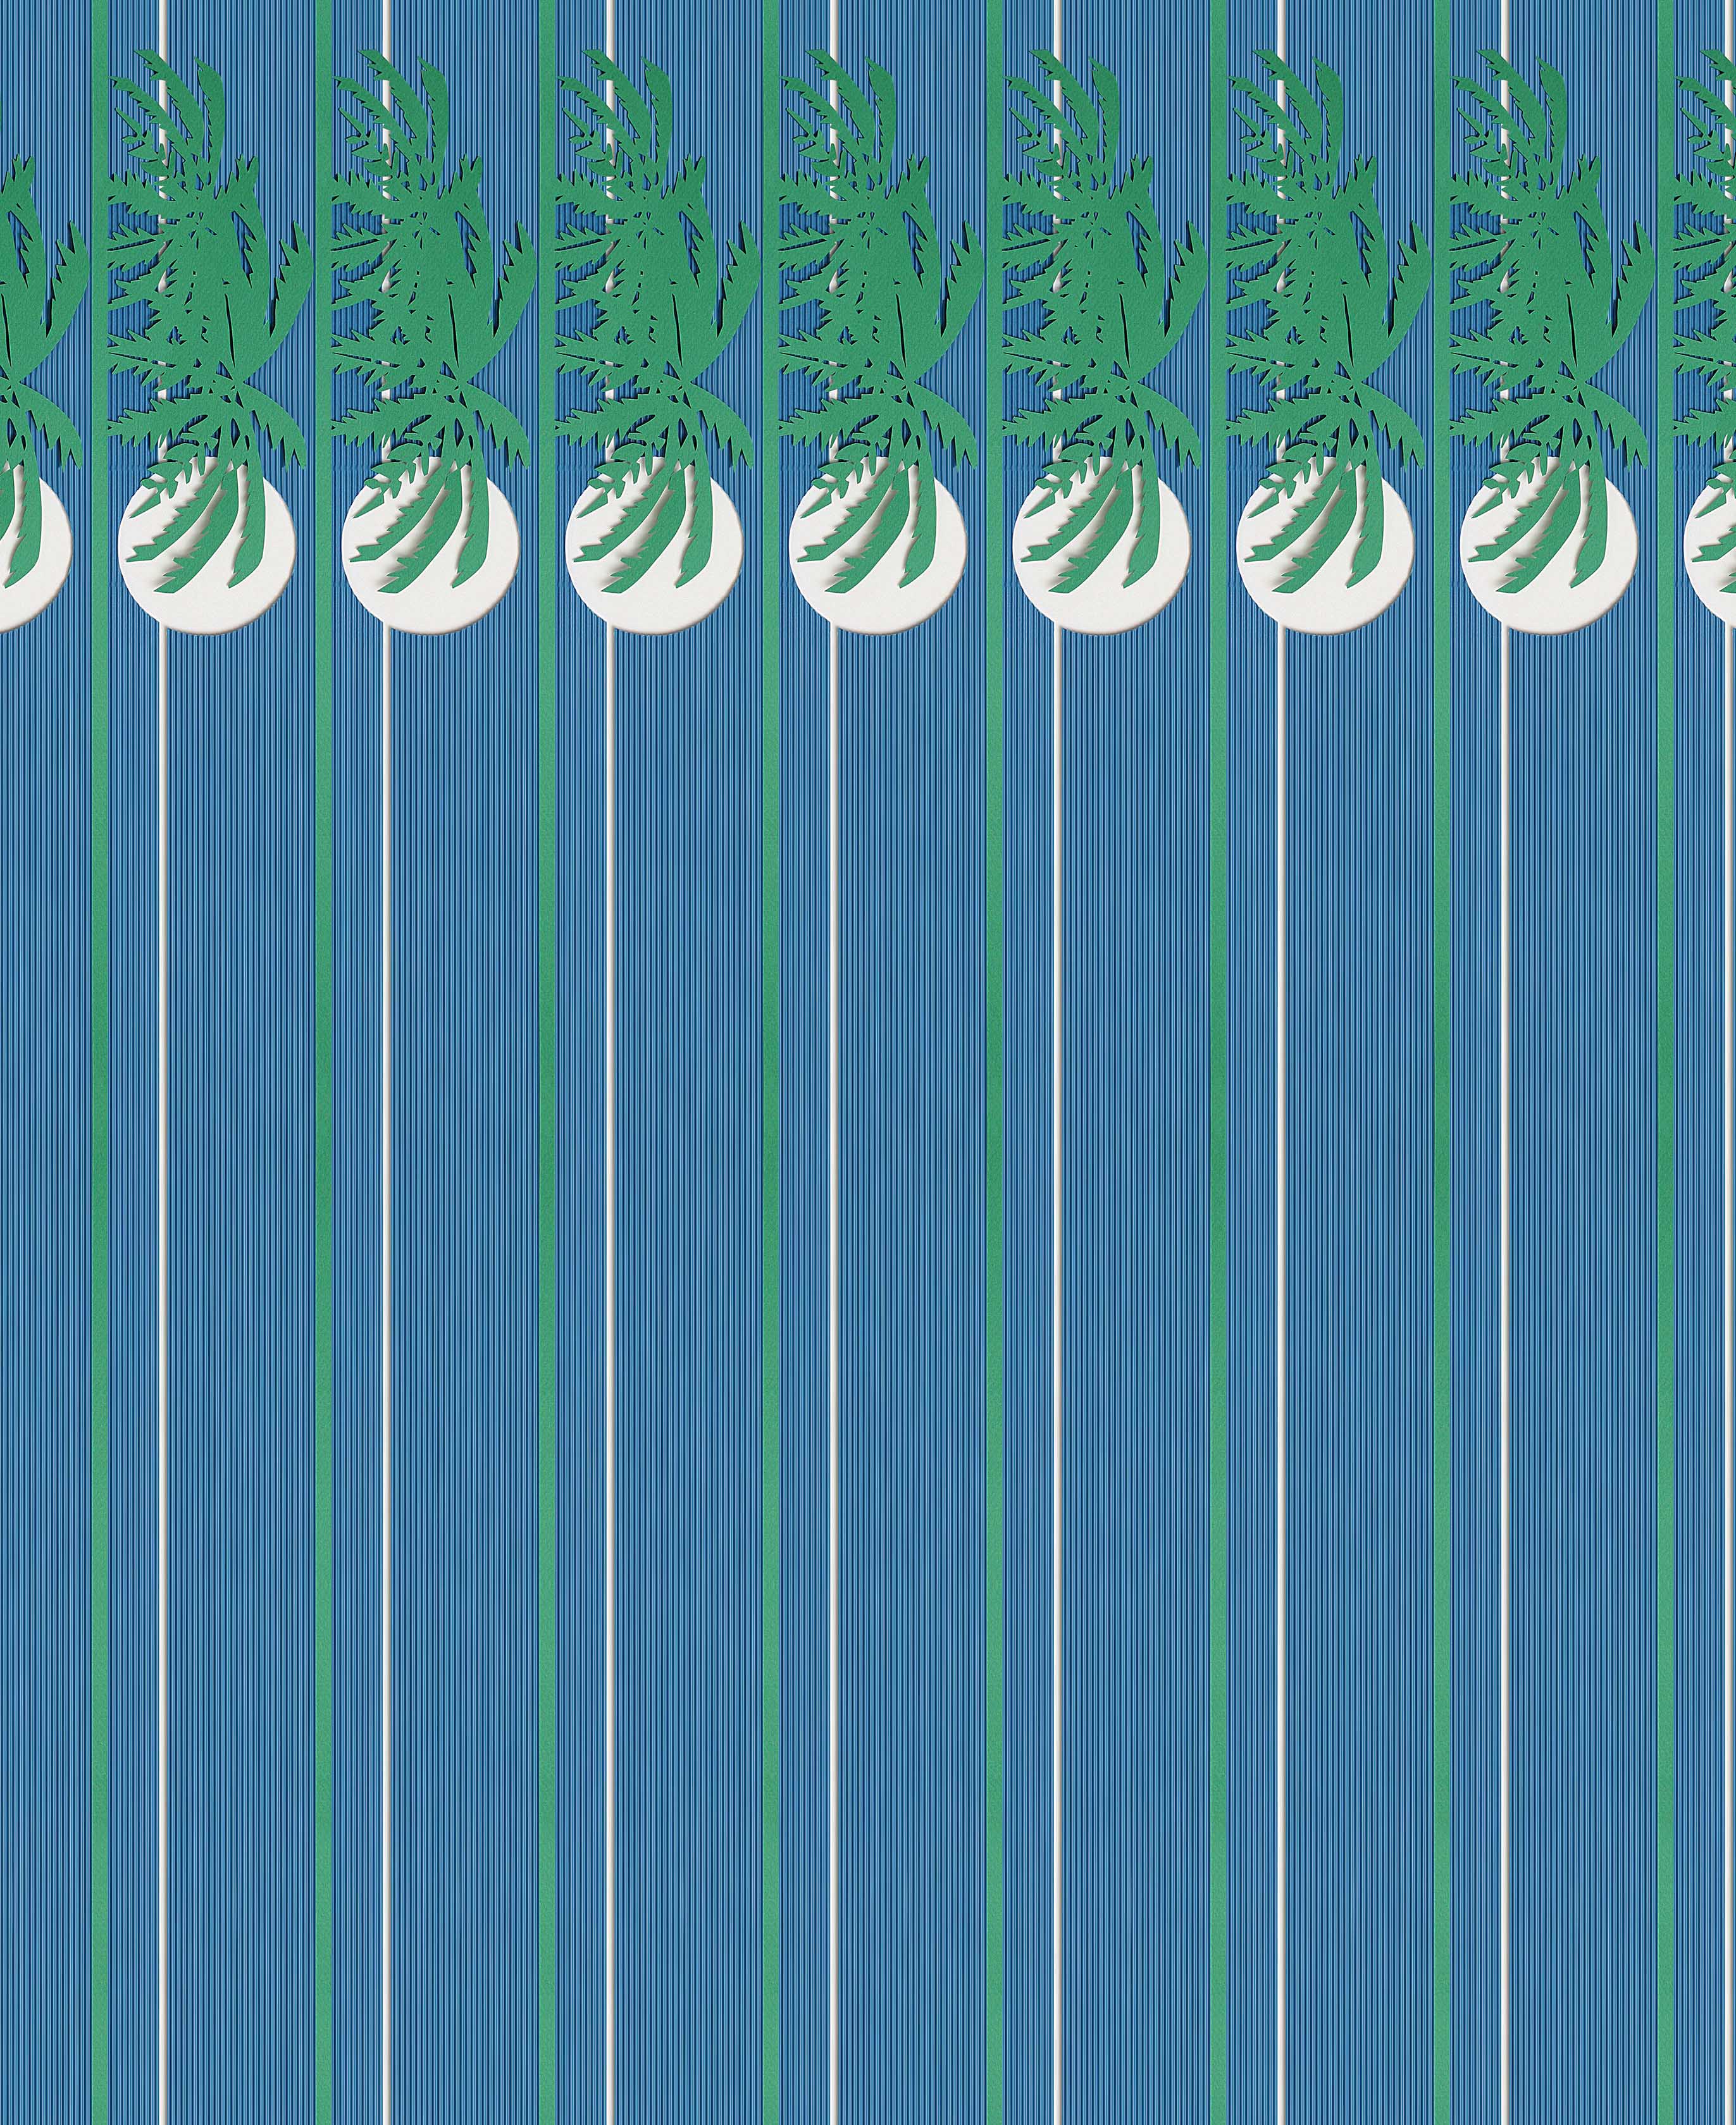 <p>Rebel Stripe: Palm, 2016, cut paper</p>
